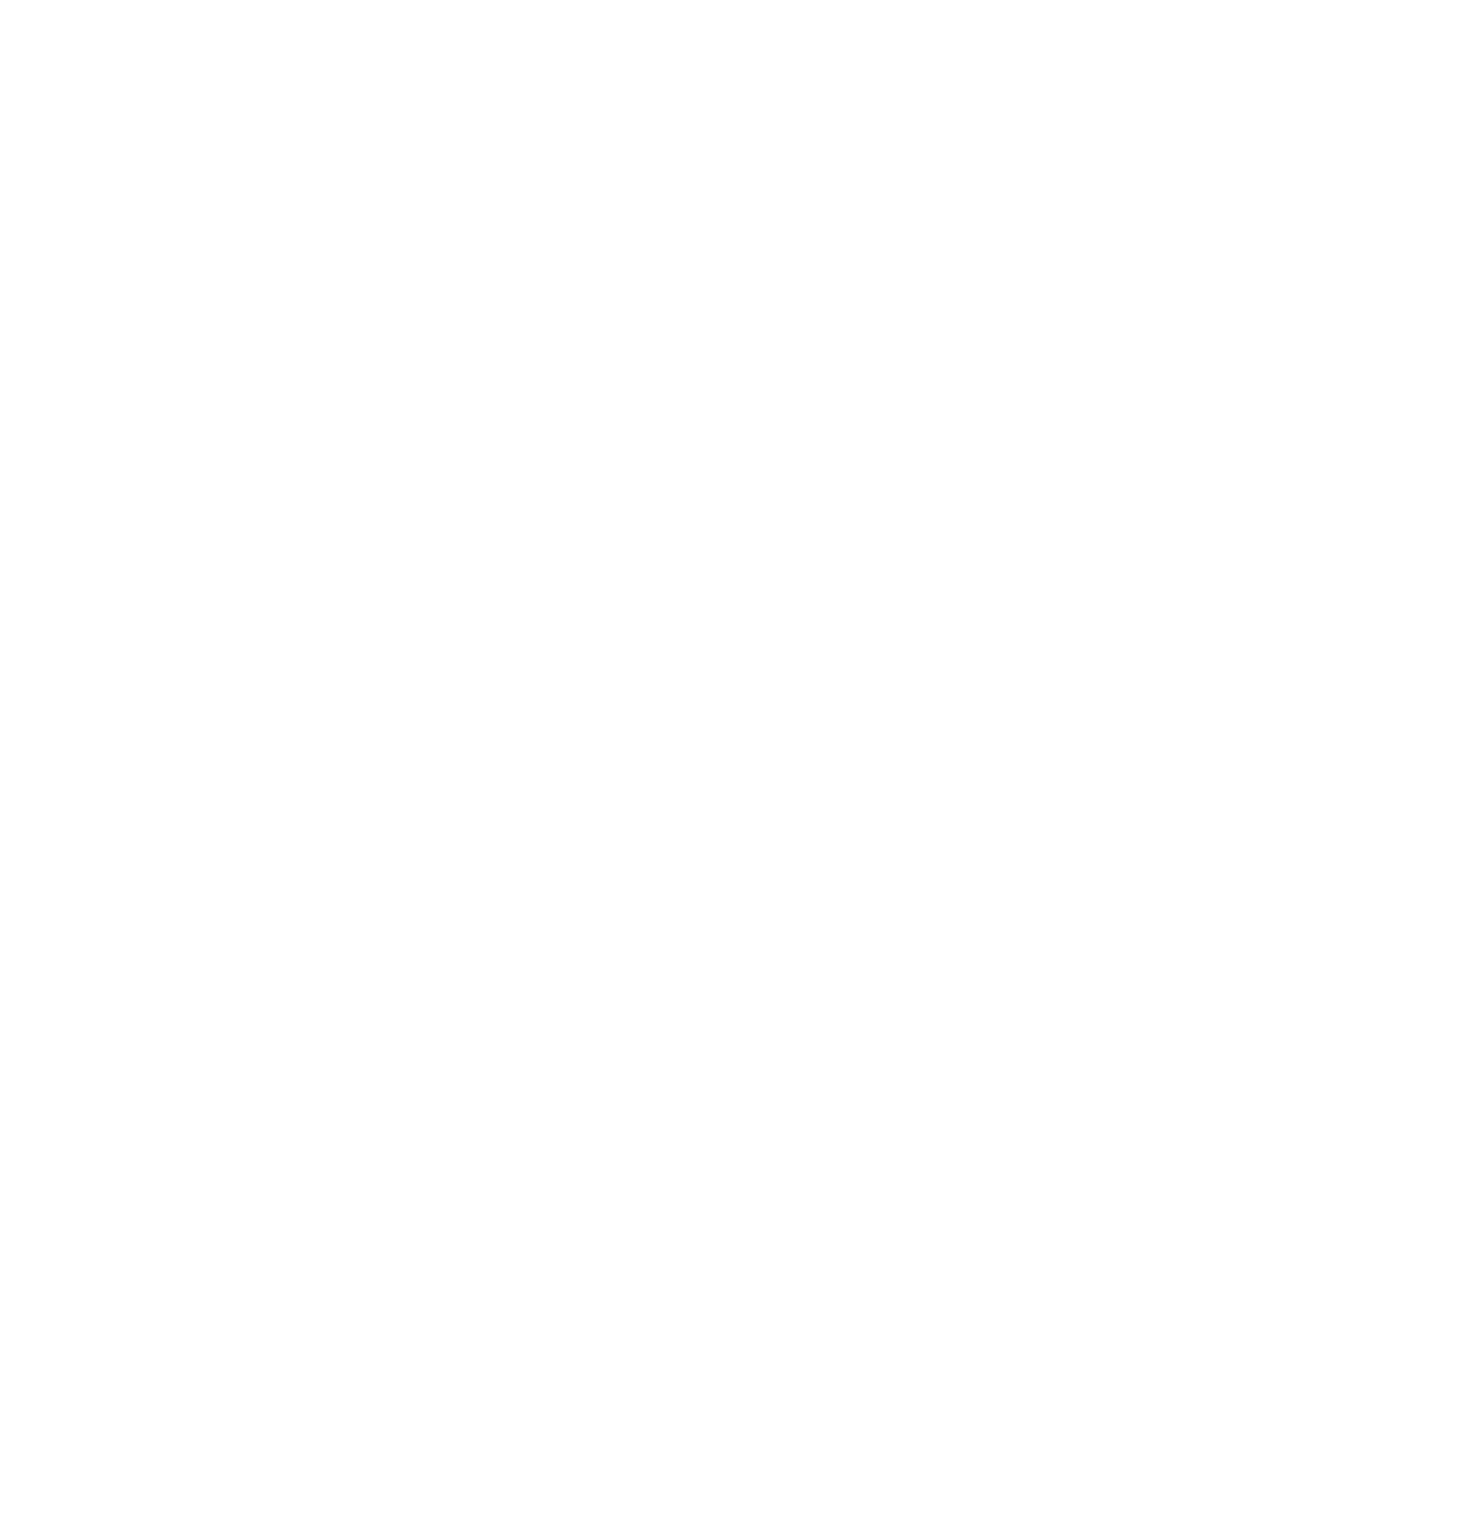 Vanguard logo pour fonds sombres (PNG transparent)